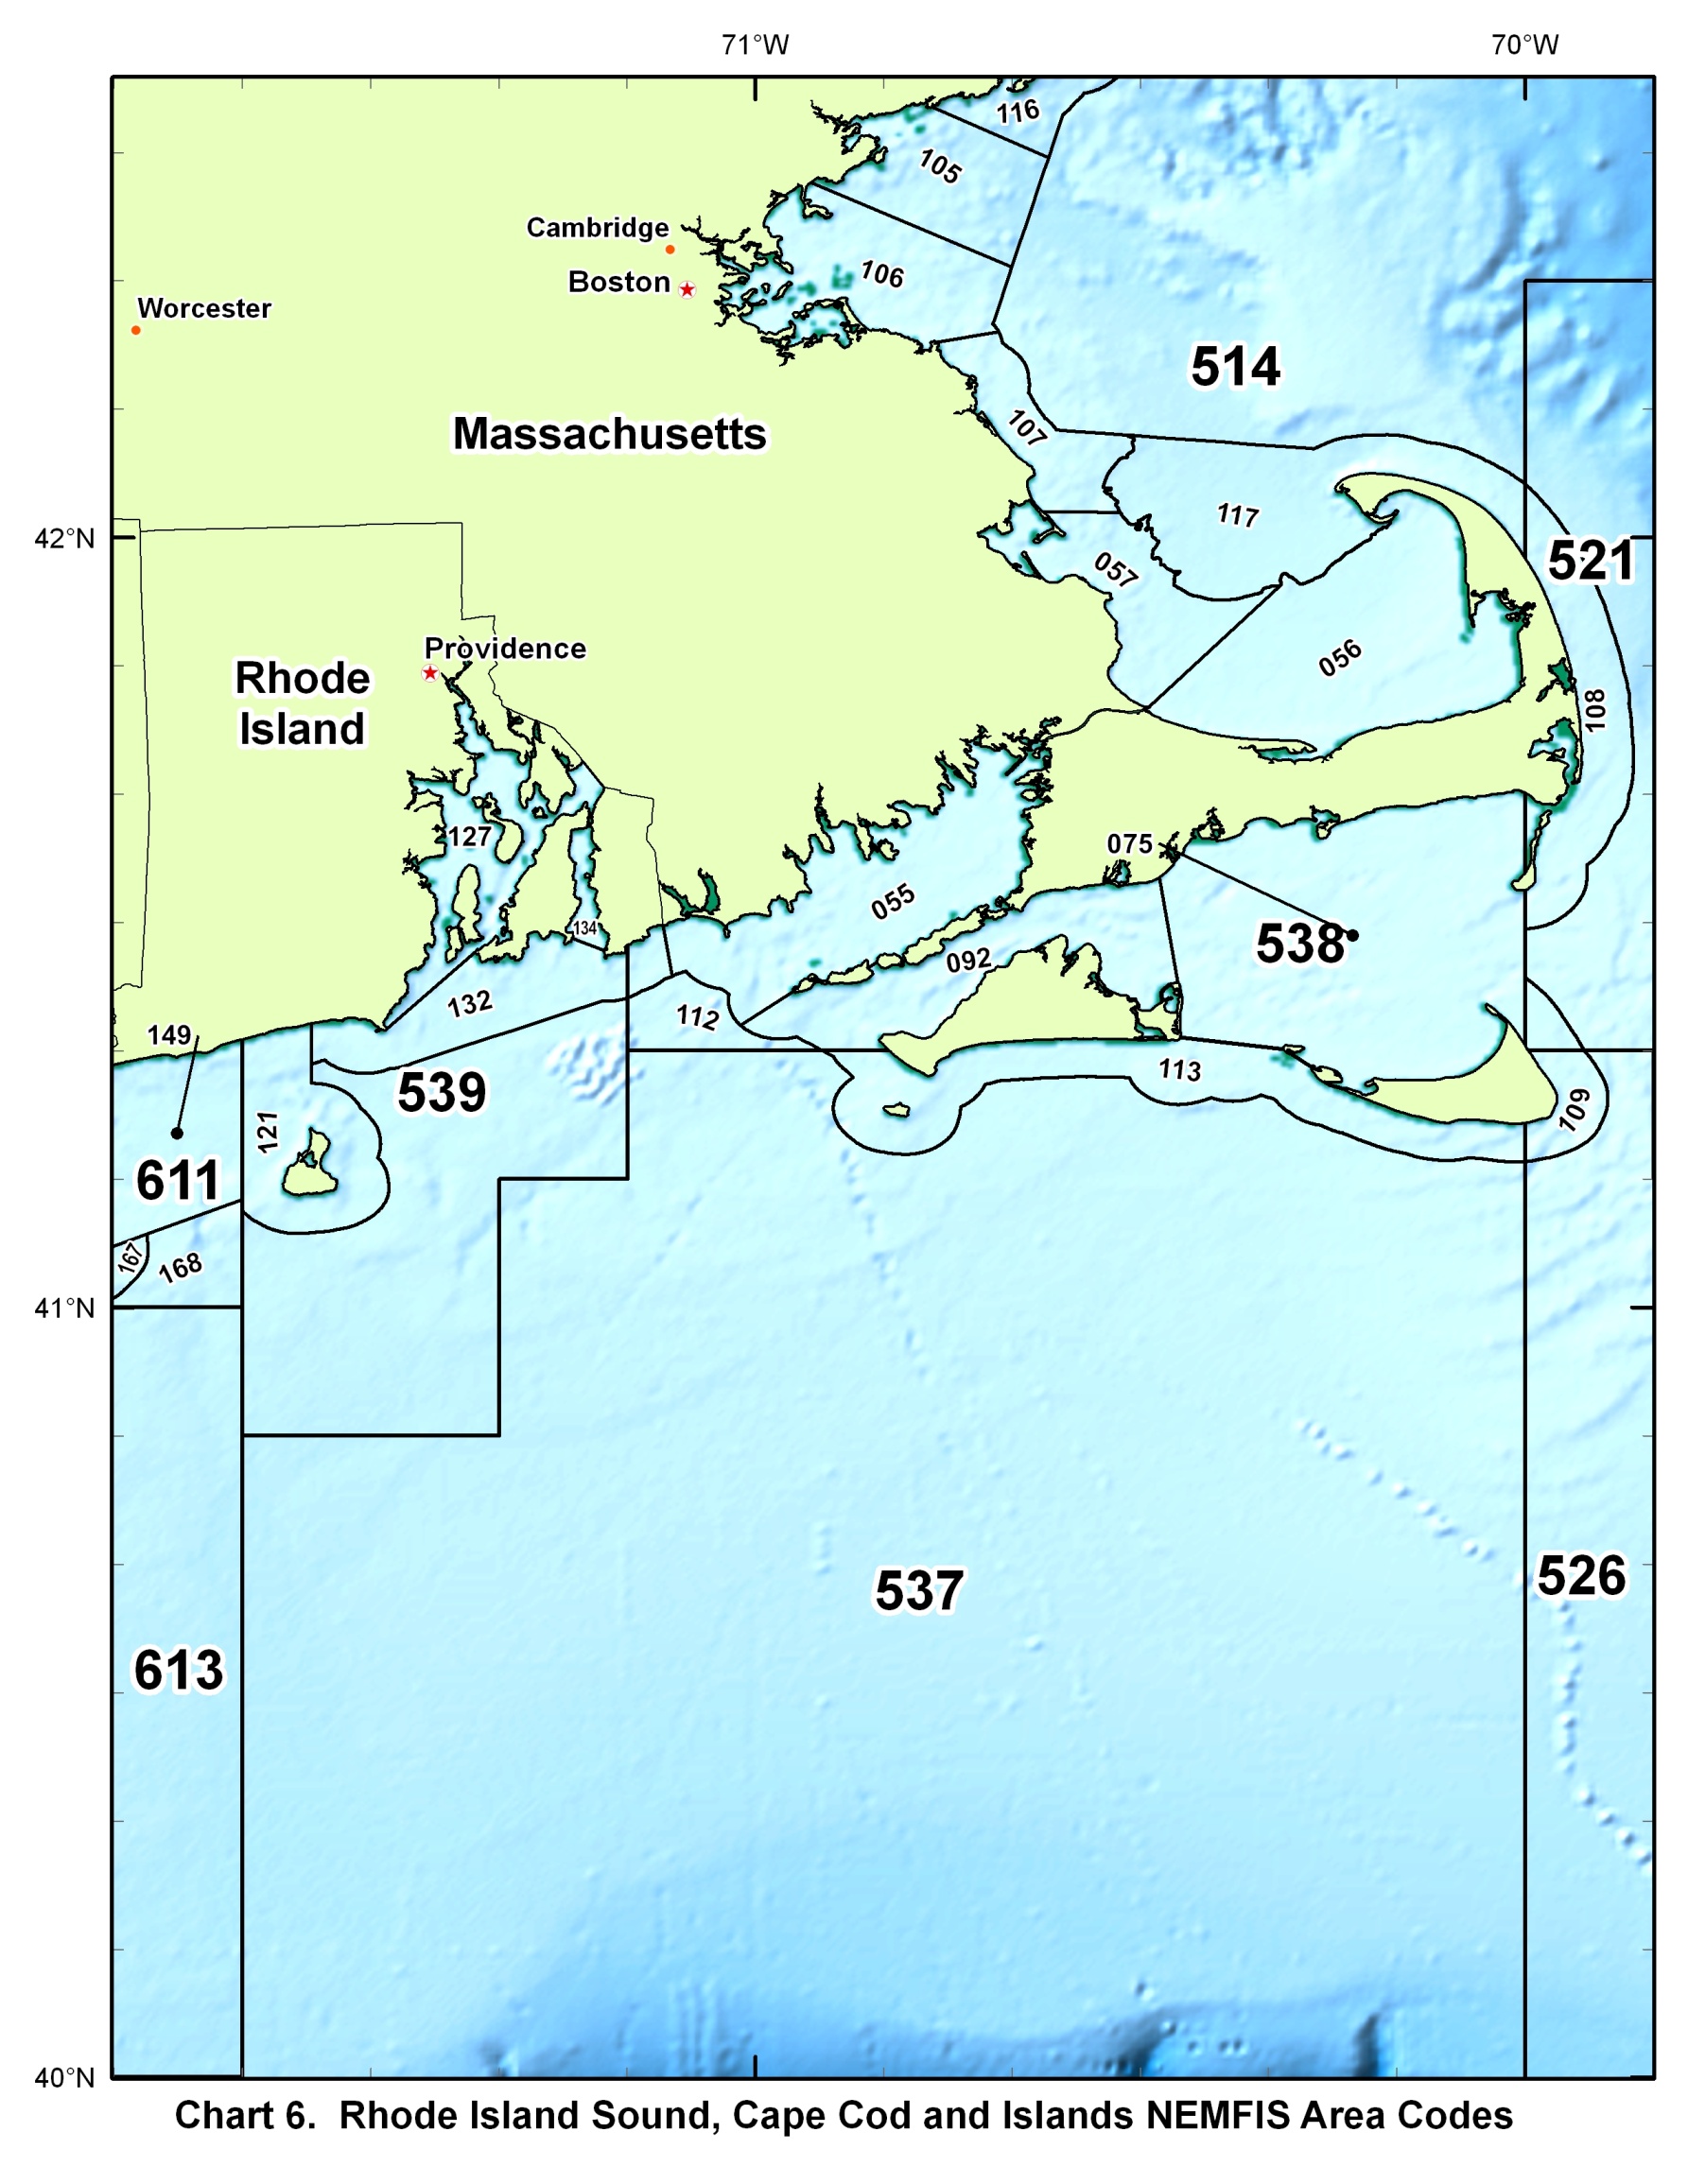 Chart 6 - RI Sound, Cape Cod and Islands NEMFIS Area Codes